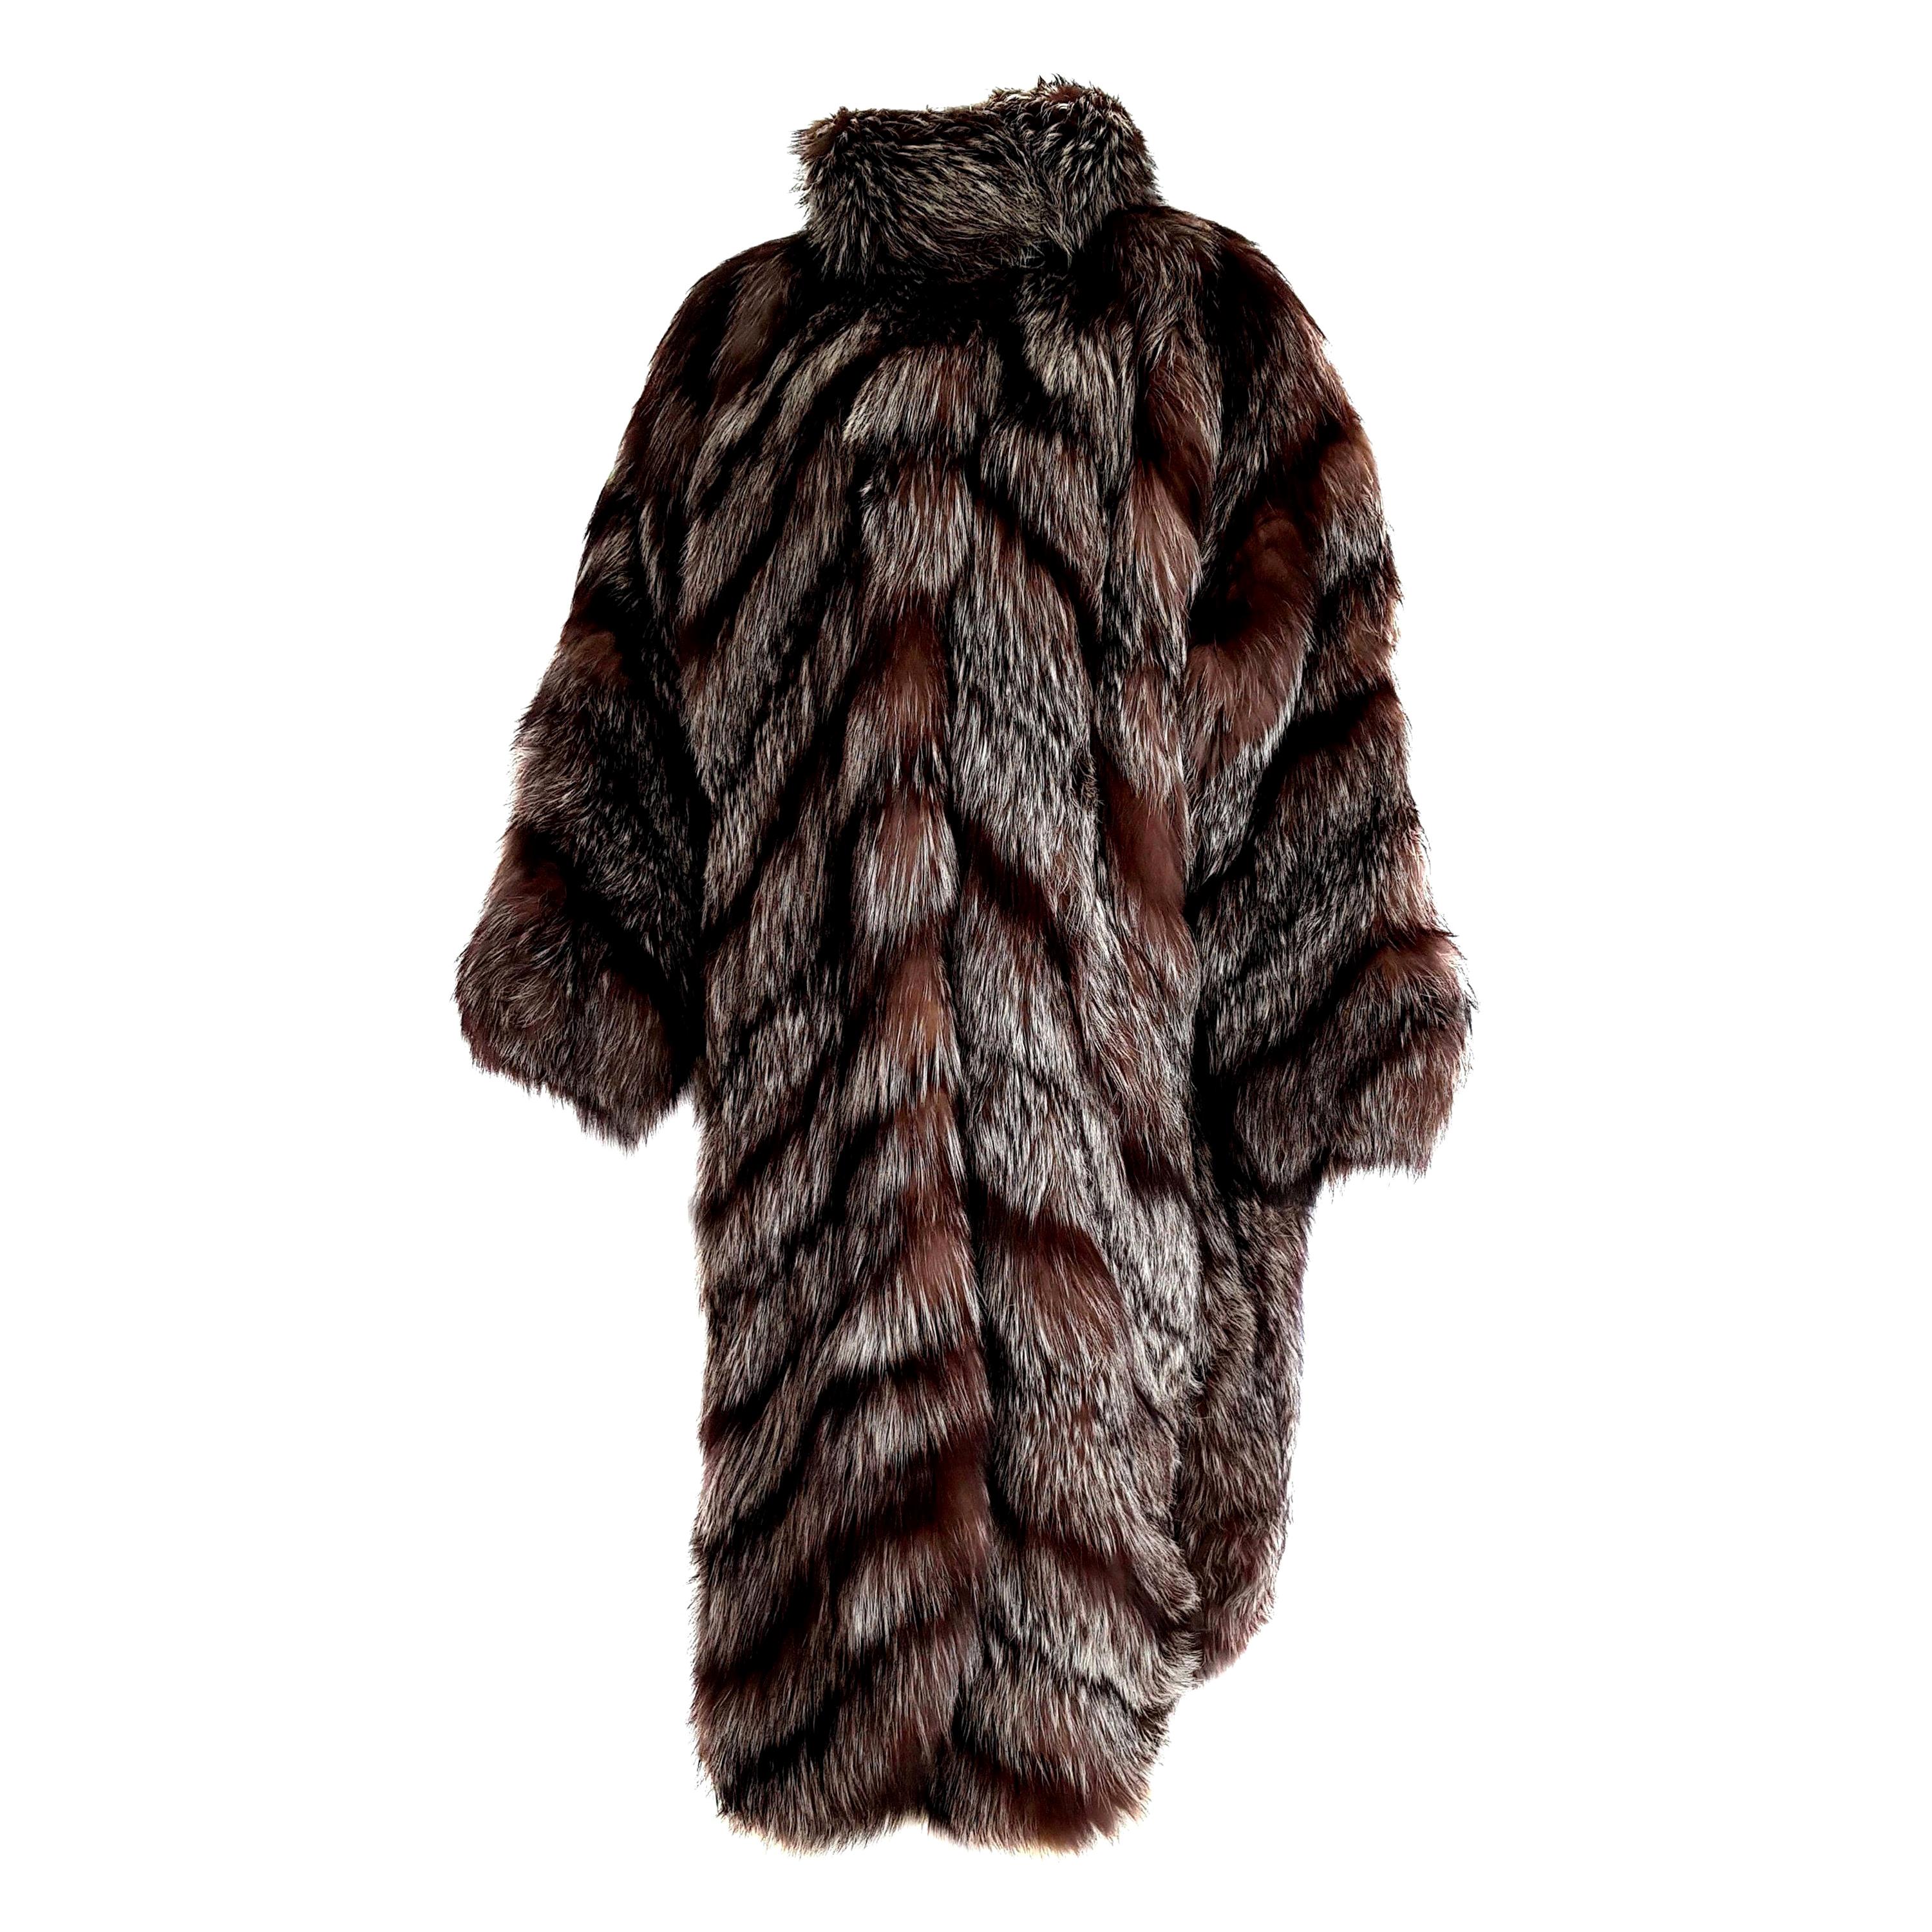 Carlo TIVIOLI "New" Haute Couture Russian Arctic Wild Silver Fox Fur Coat-Unworn For Sale